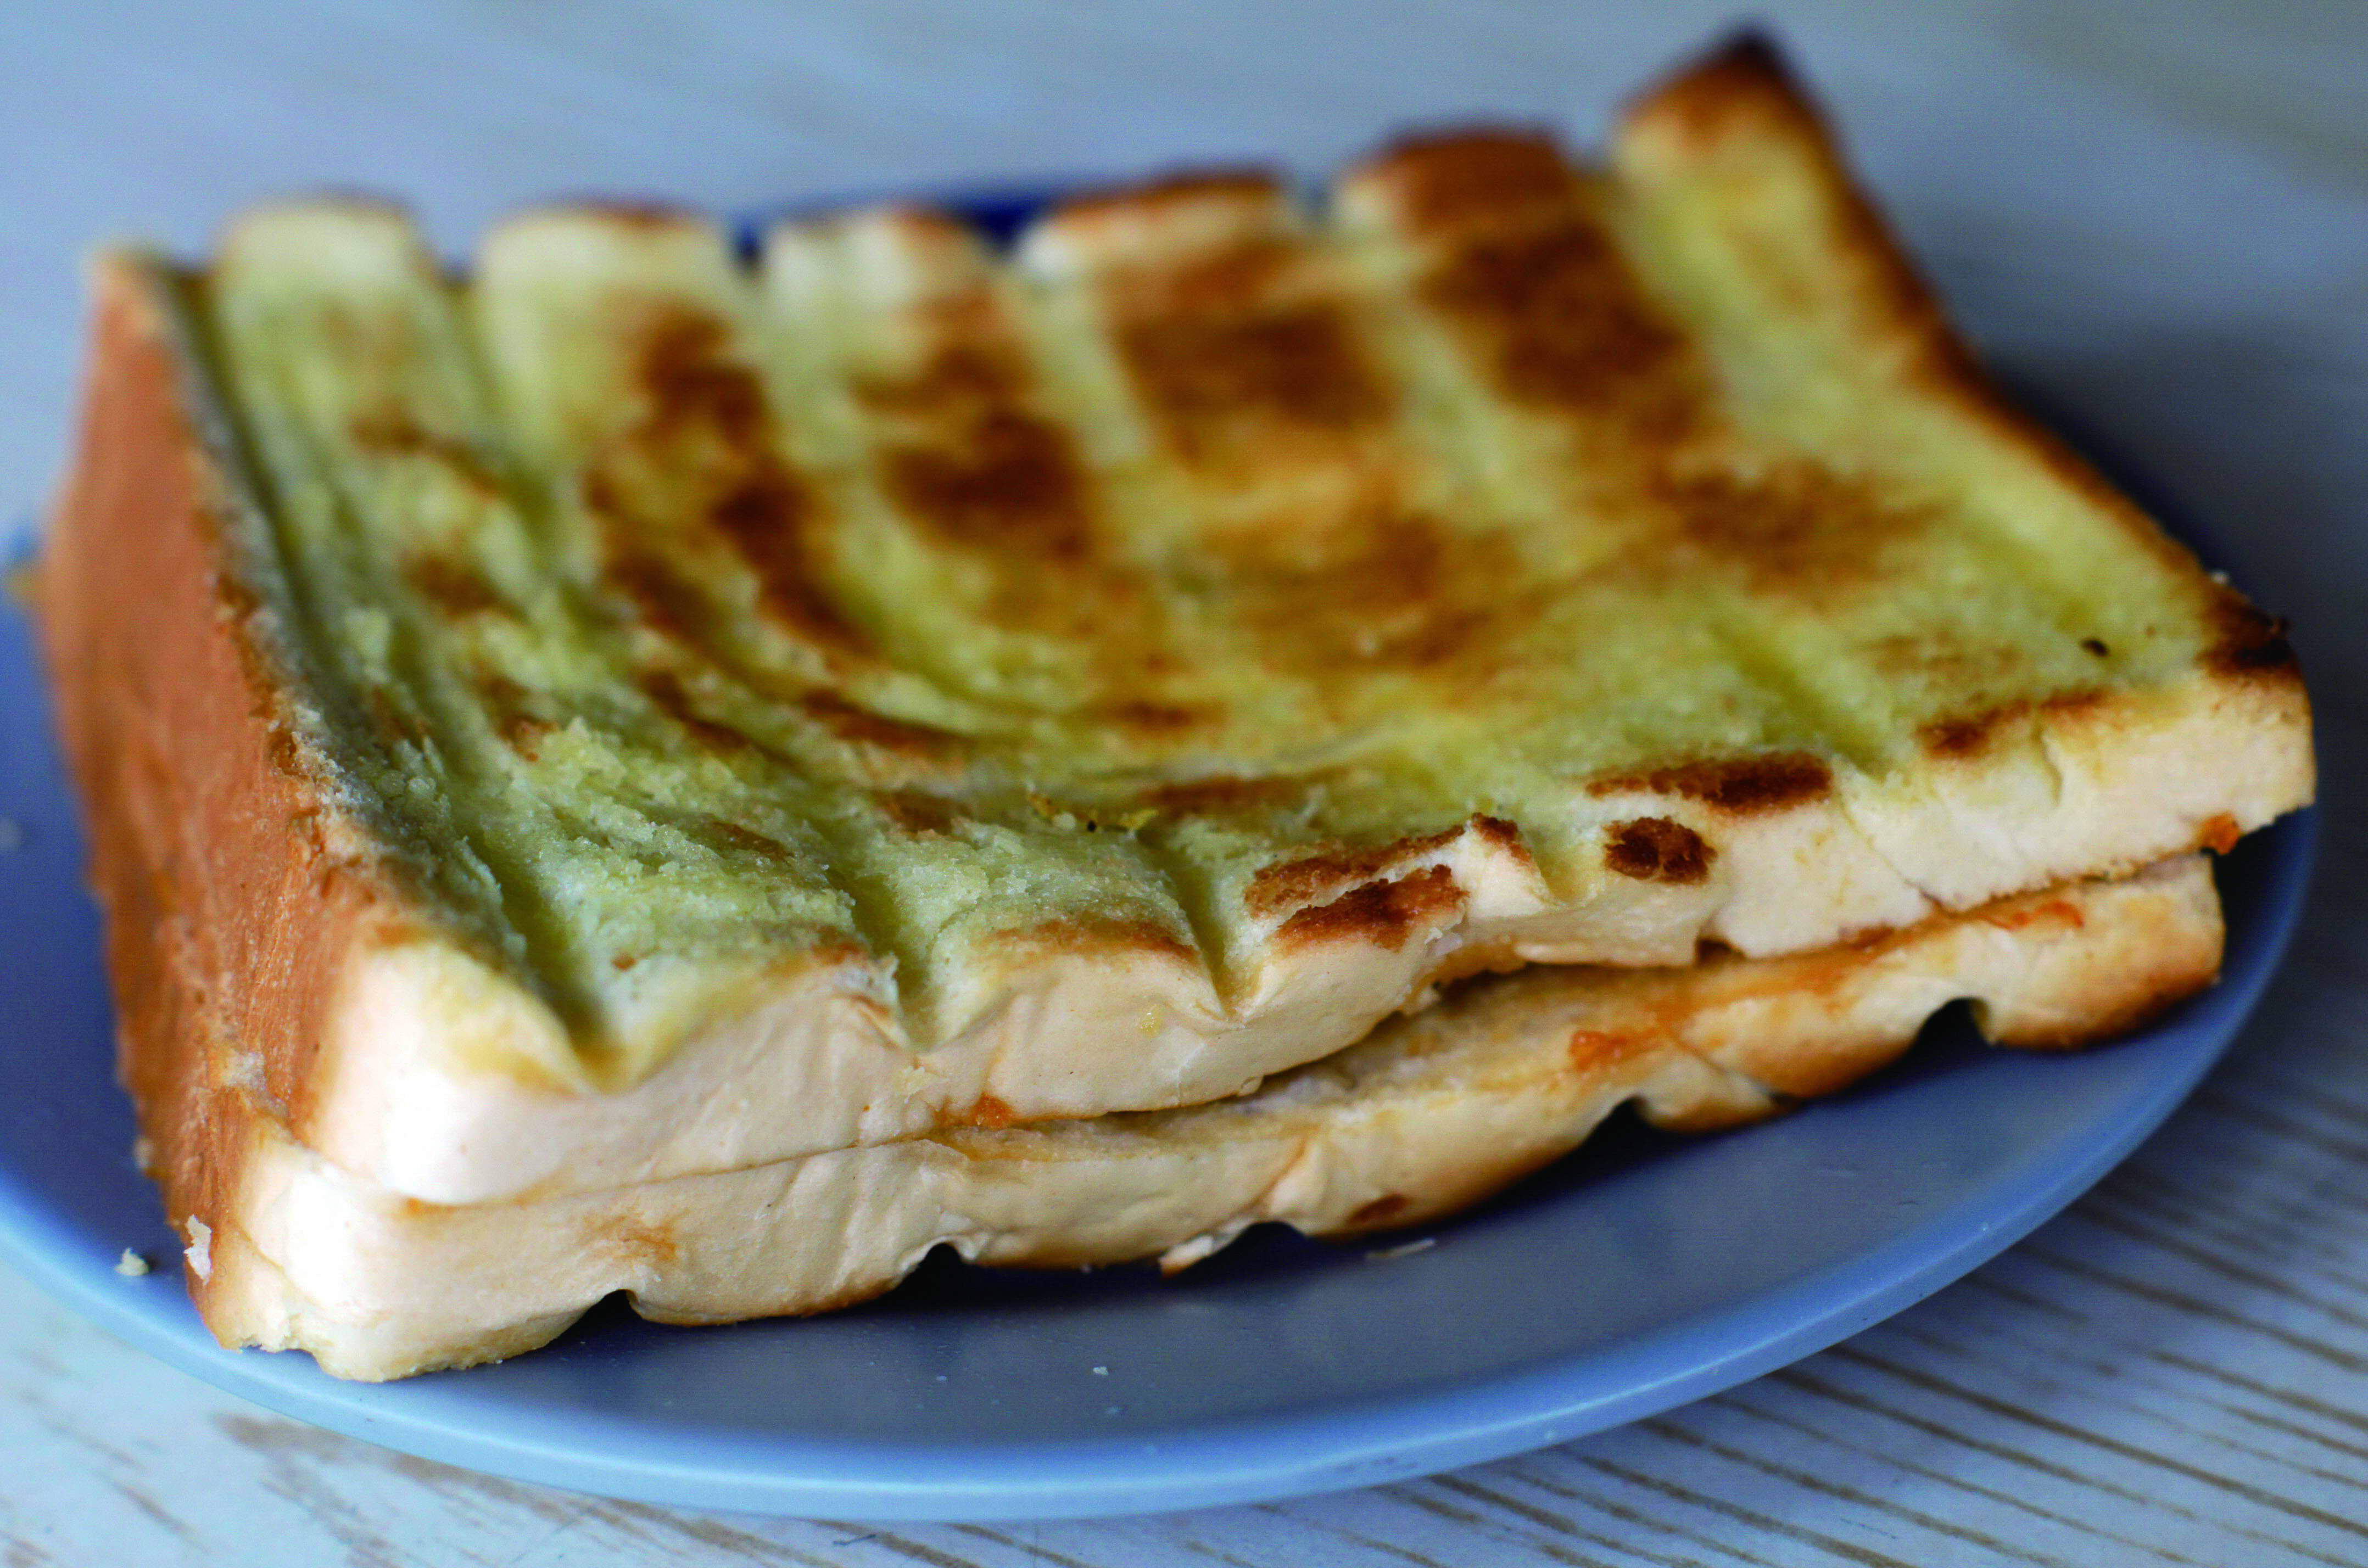 木瓜醬烤土司 Papaya jam on toast